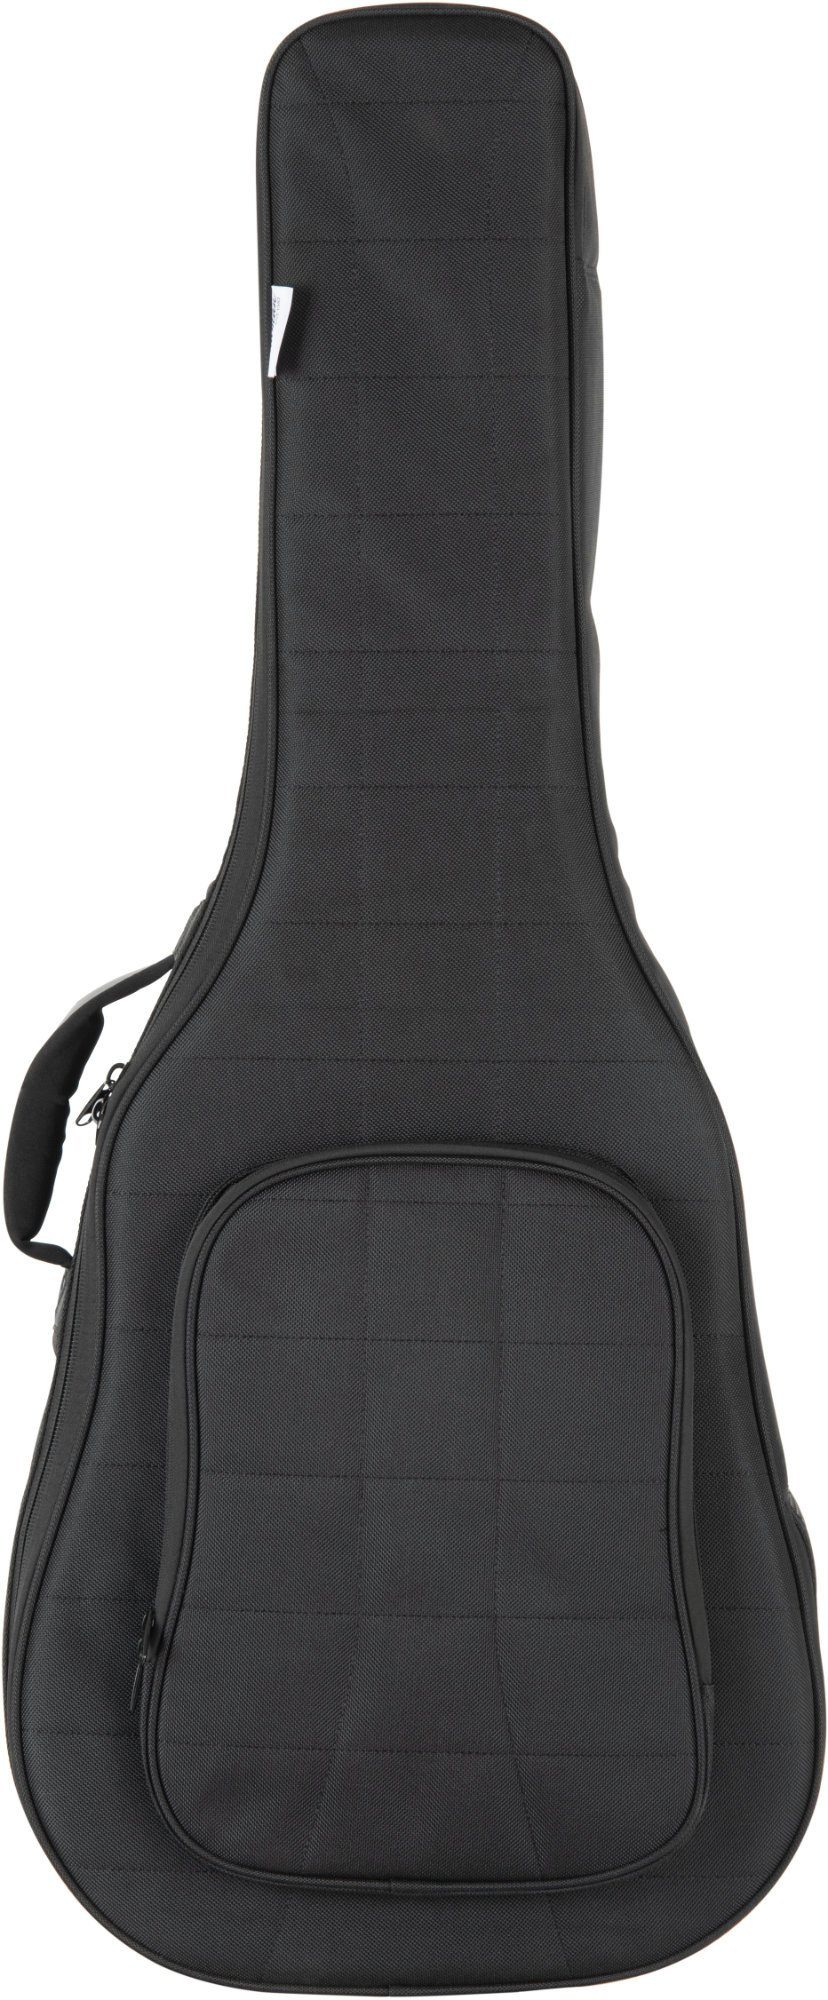 Shaman Gitarrentasche WGBT-4122BK Westerngitarre, Westerngitarren-Tasche mit gepolsterte für Rucksackgarnitur